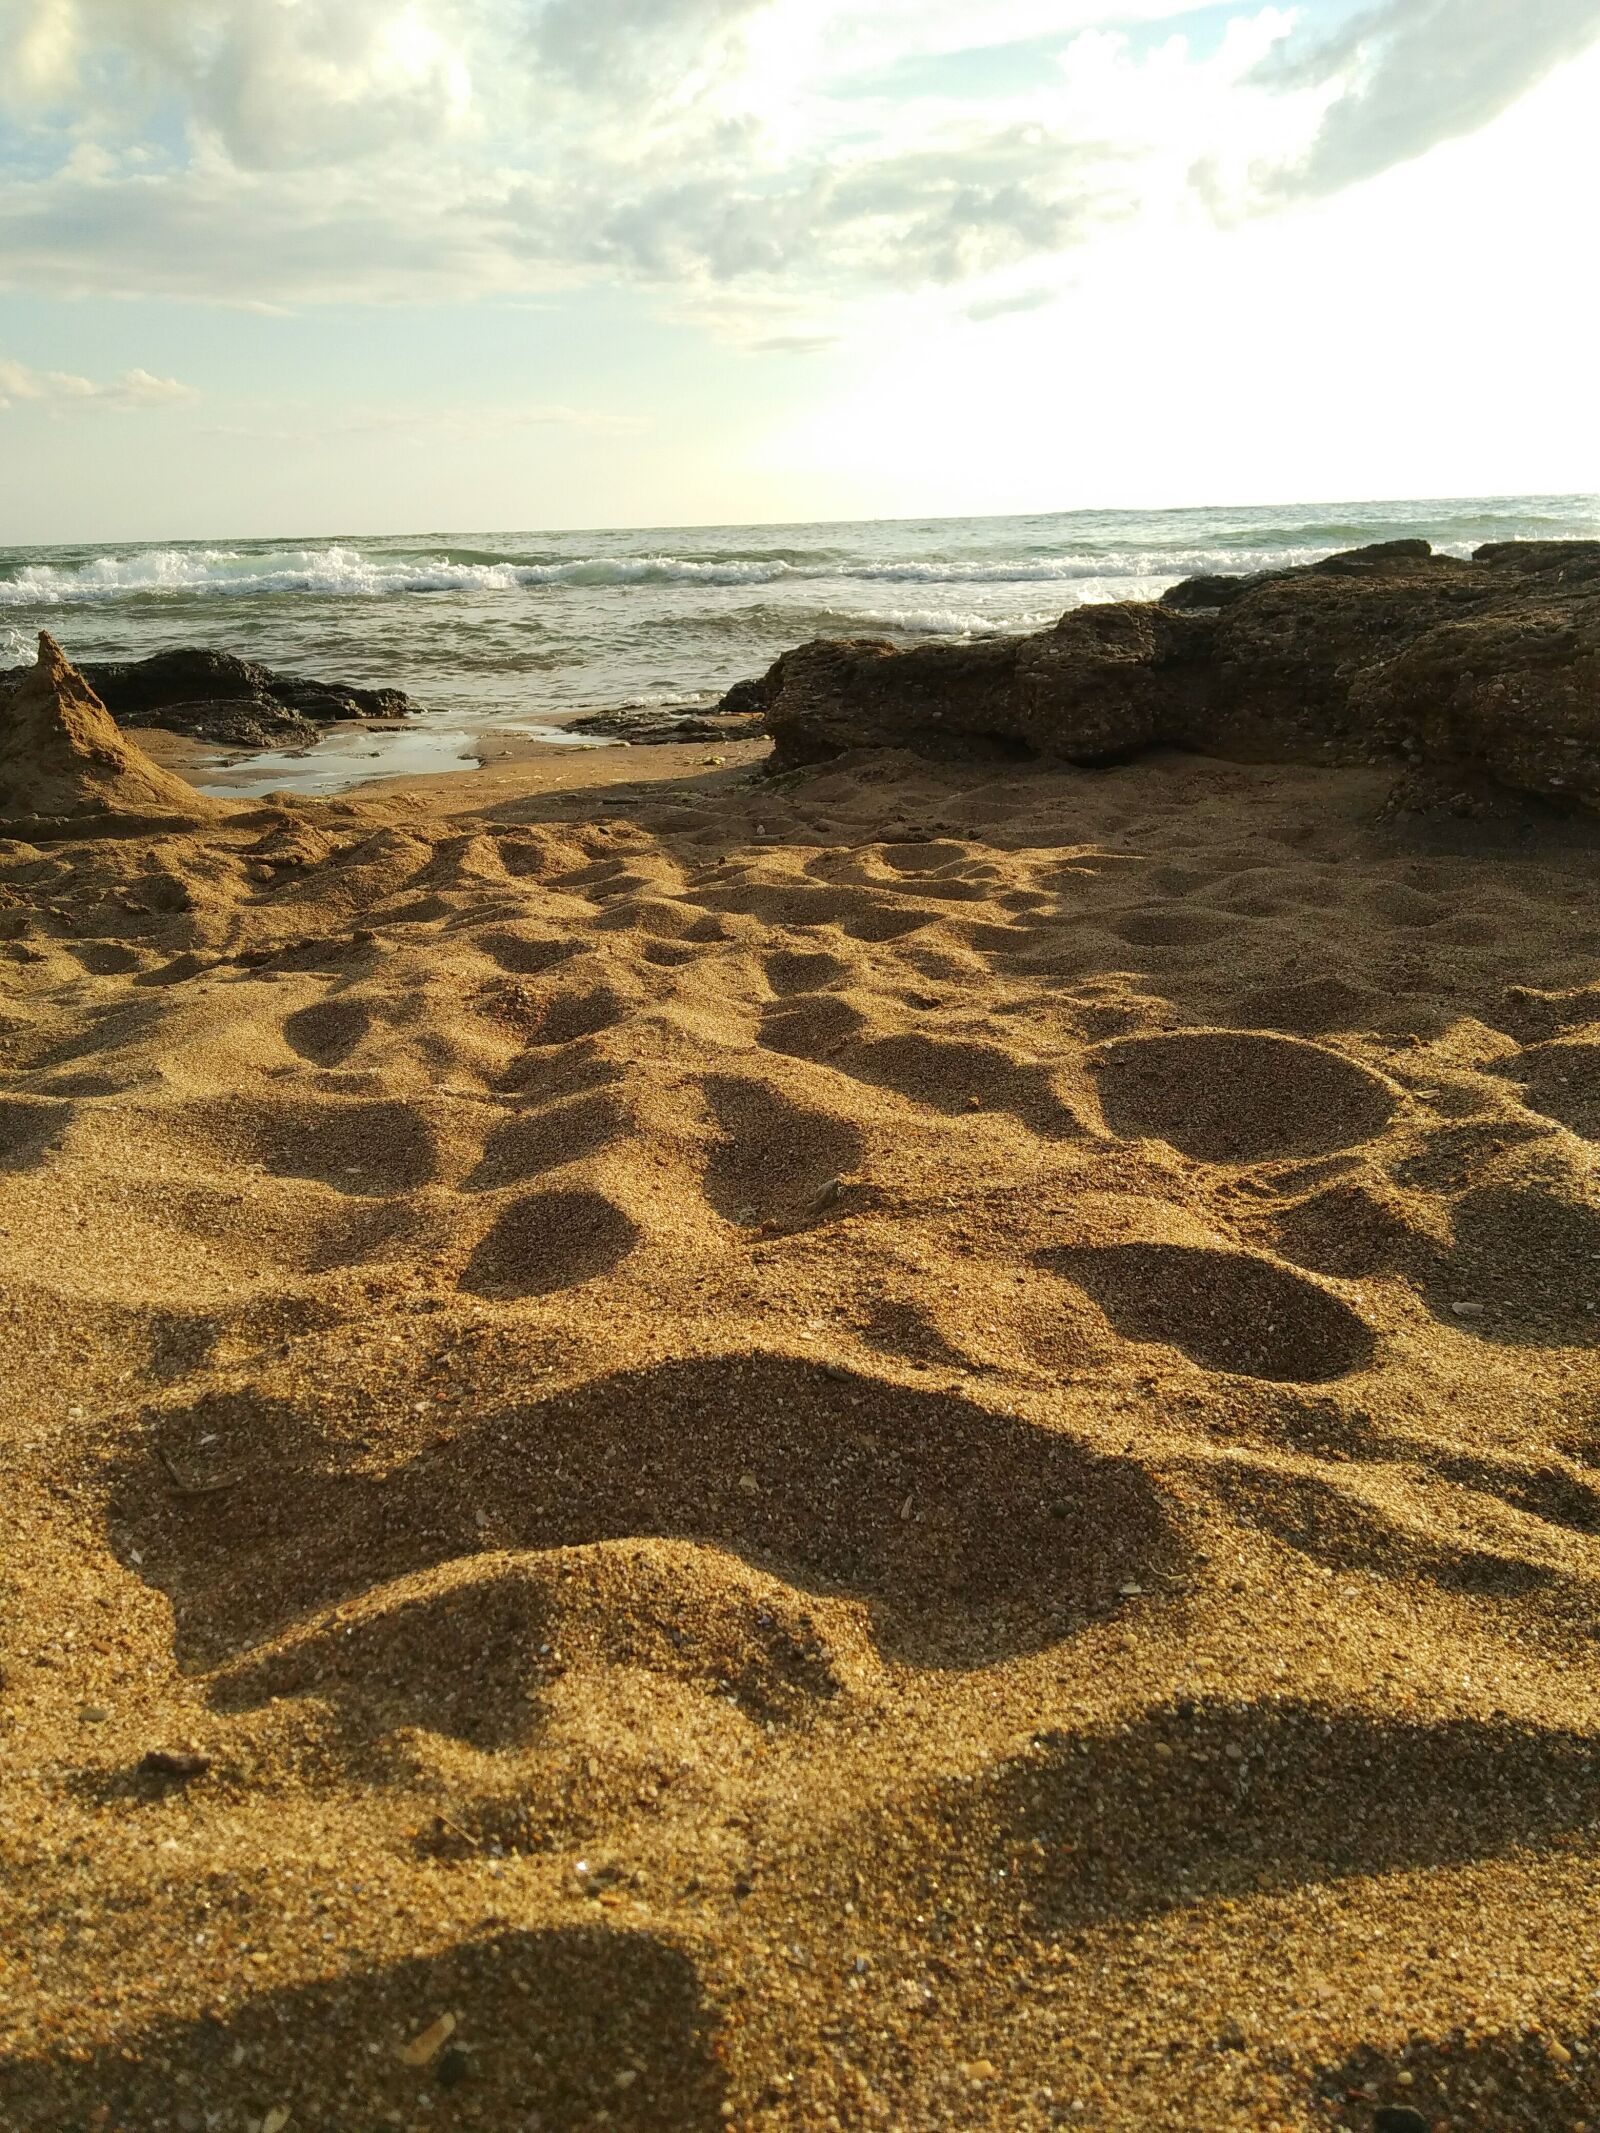 Xiaomi Redmi 4 Pro sample photo. Coast, sea, landscape photography